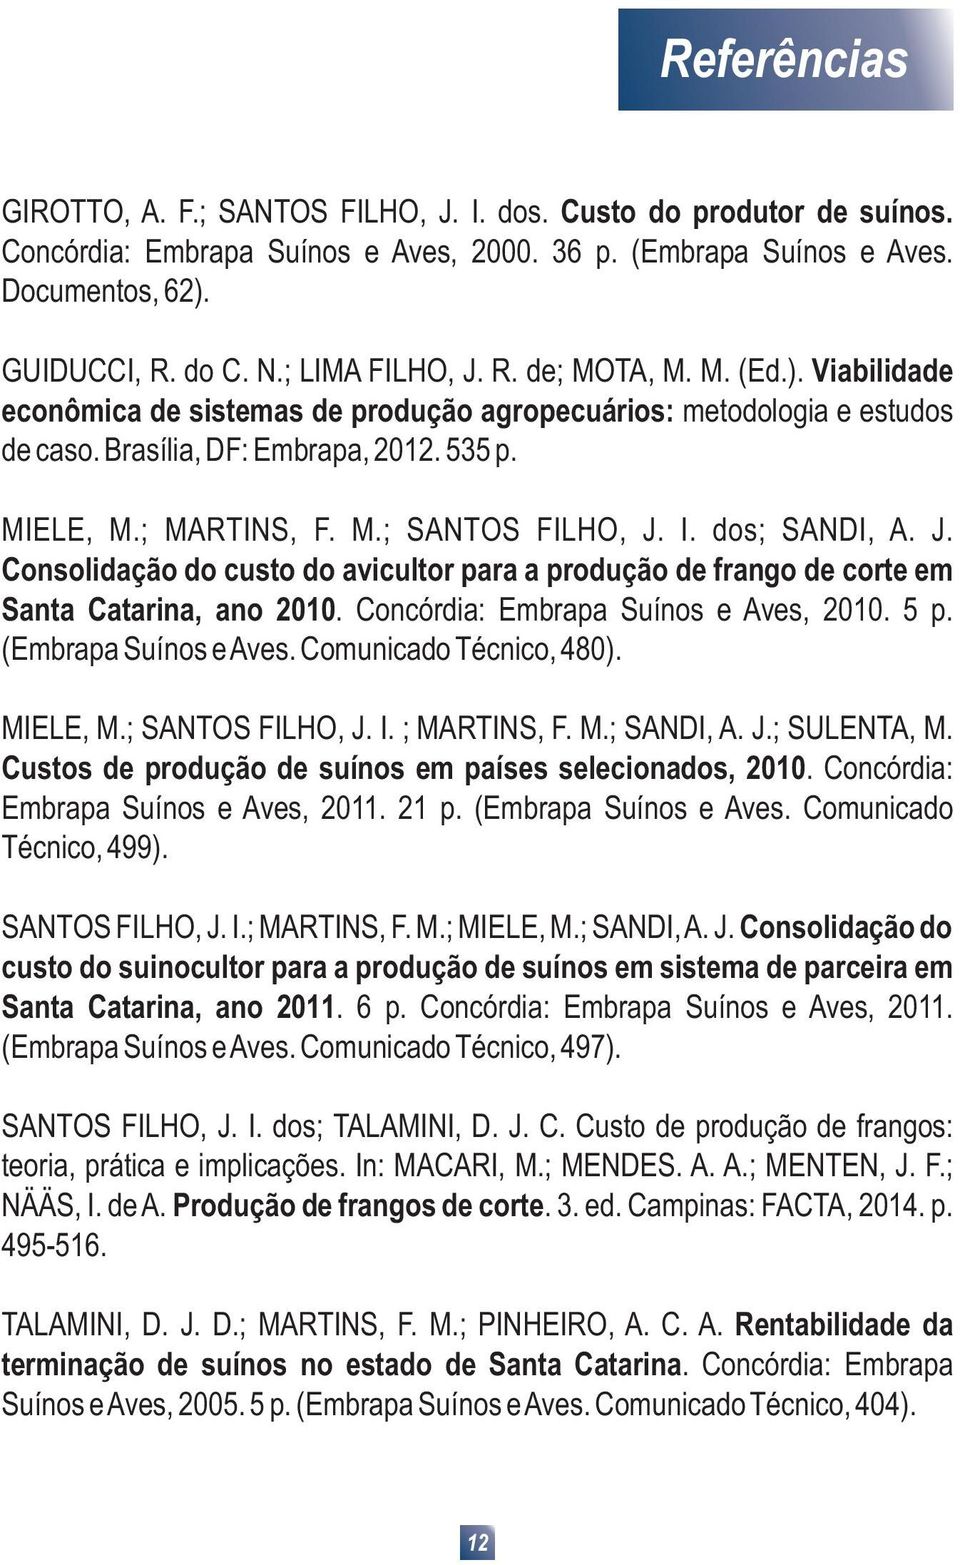 I. dos; SANDI, A. J. Consolidação do custo do avicultor para a produção de frango de corte em Santa Catarina, ano 2010. Concórdia: Embrapa Suínos e Aves, 2010. 5 p. (Embrapa Suínos e Aves.